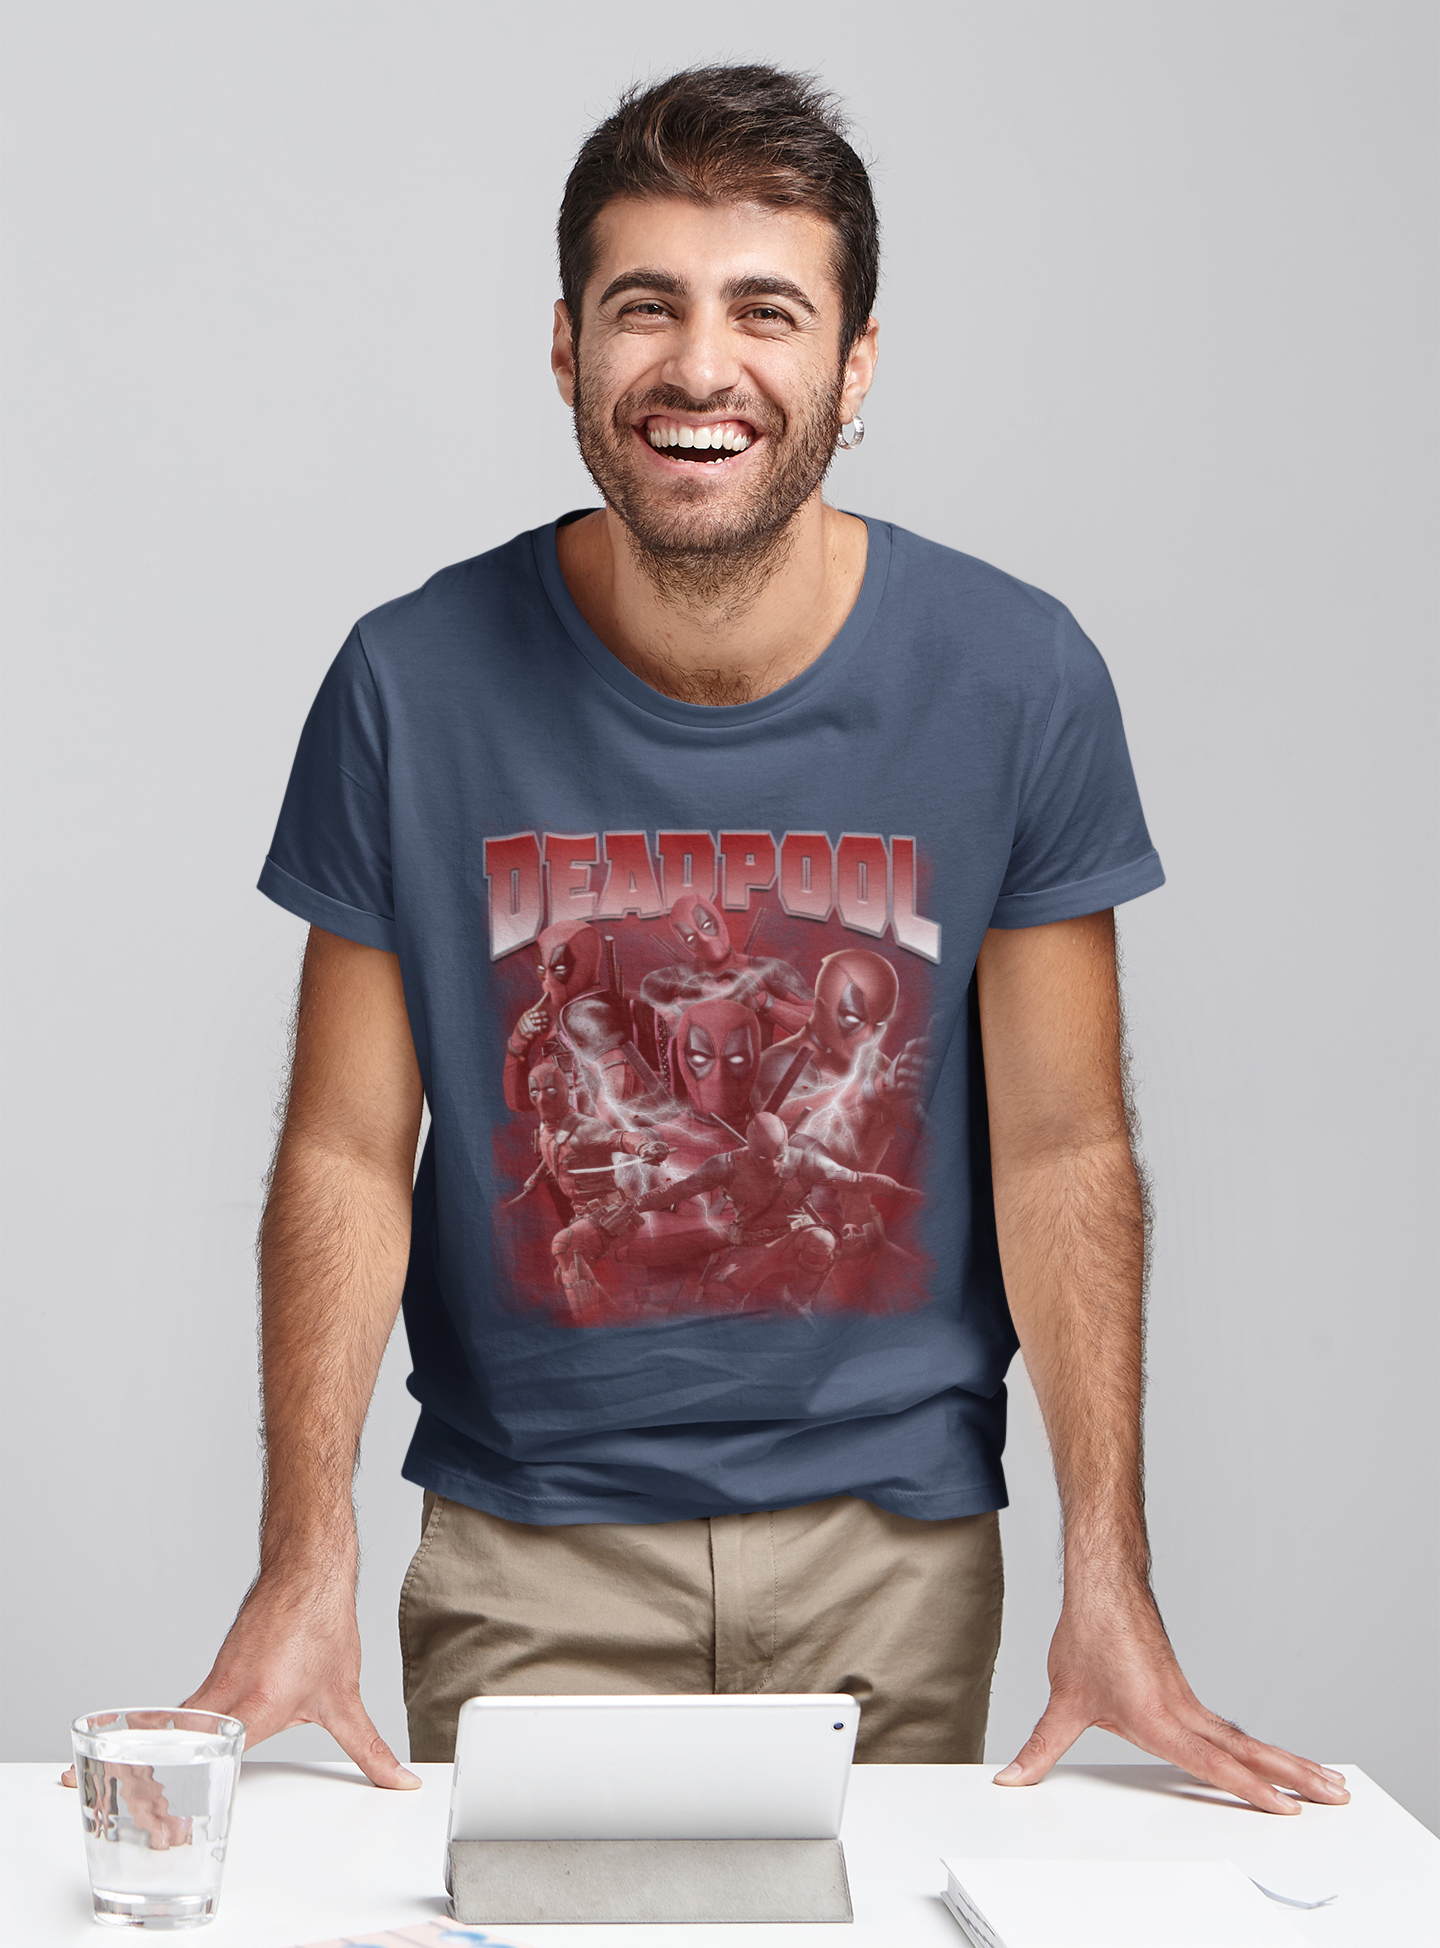 Deadpool T Shirt, Superhero Deadpool T Shirt